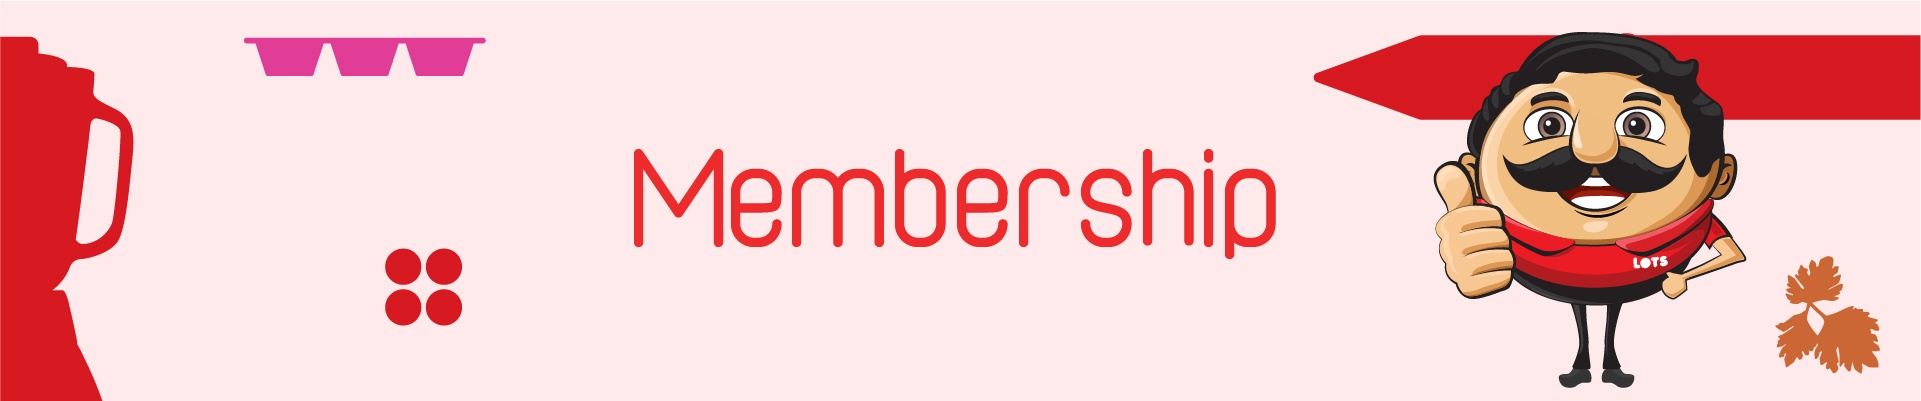 business membership 